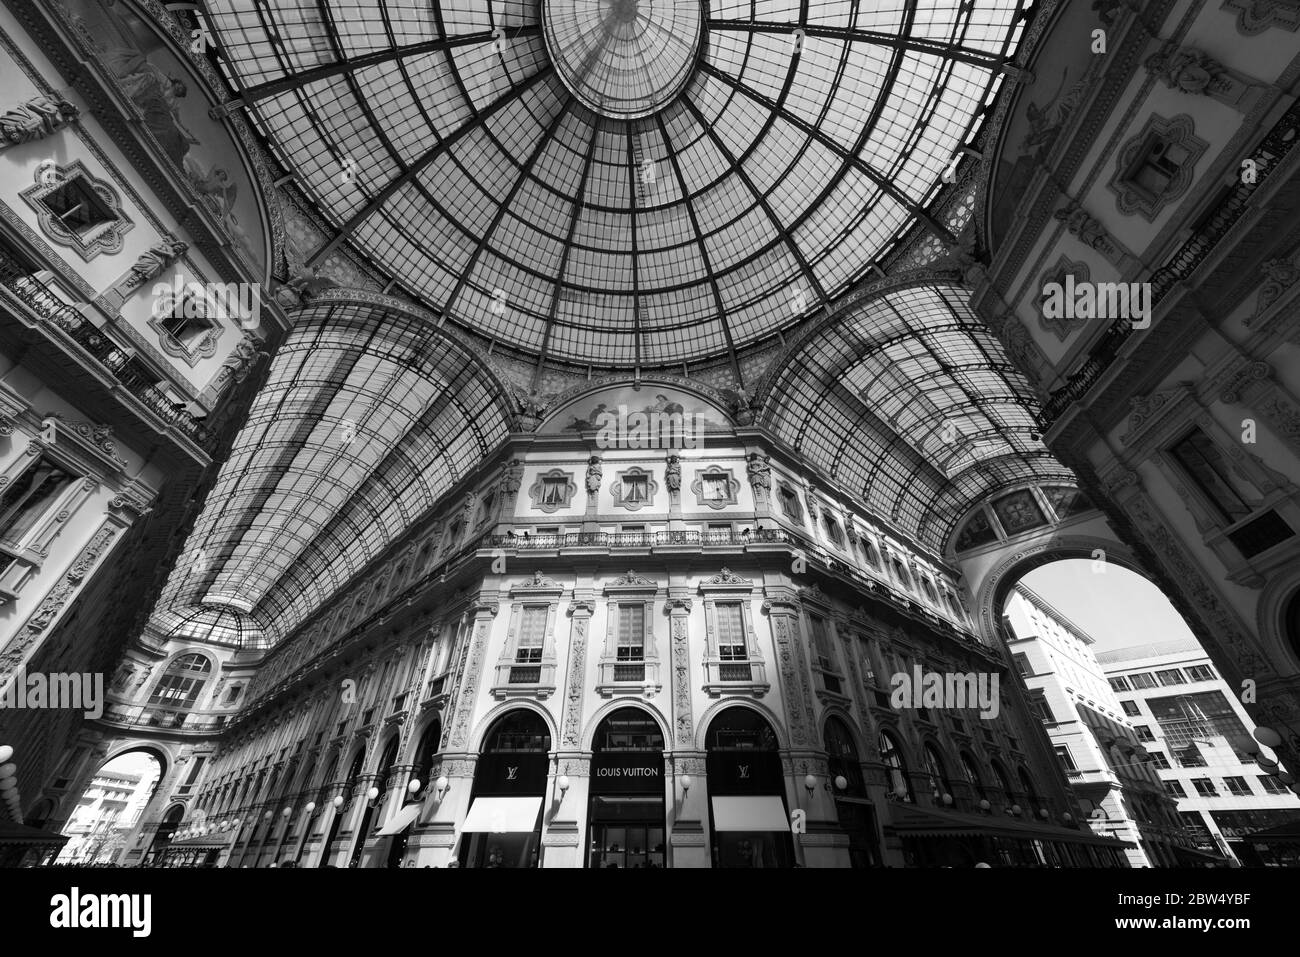 MILANO - 16 MARZO 2018: Immagine in bianco e nero degli interni decorati della Galleria Vittorio Emanuele II, situata a Milano Foto Stock